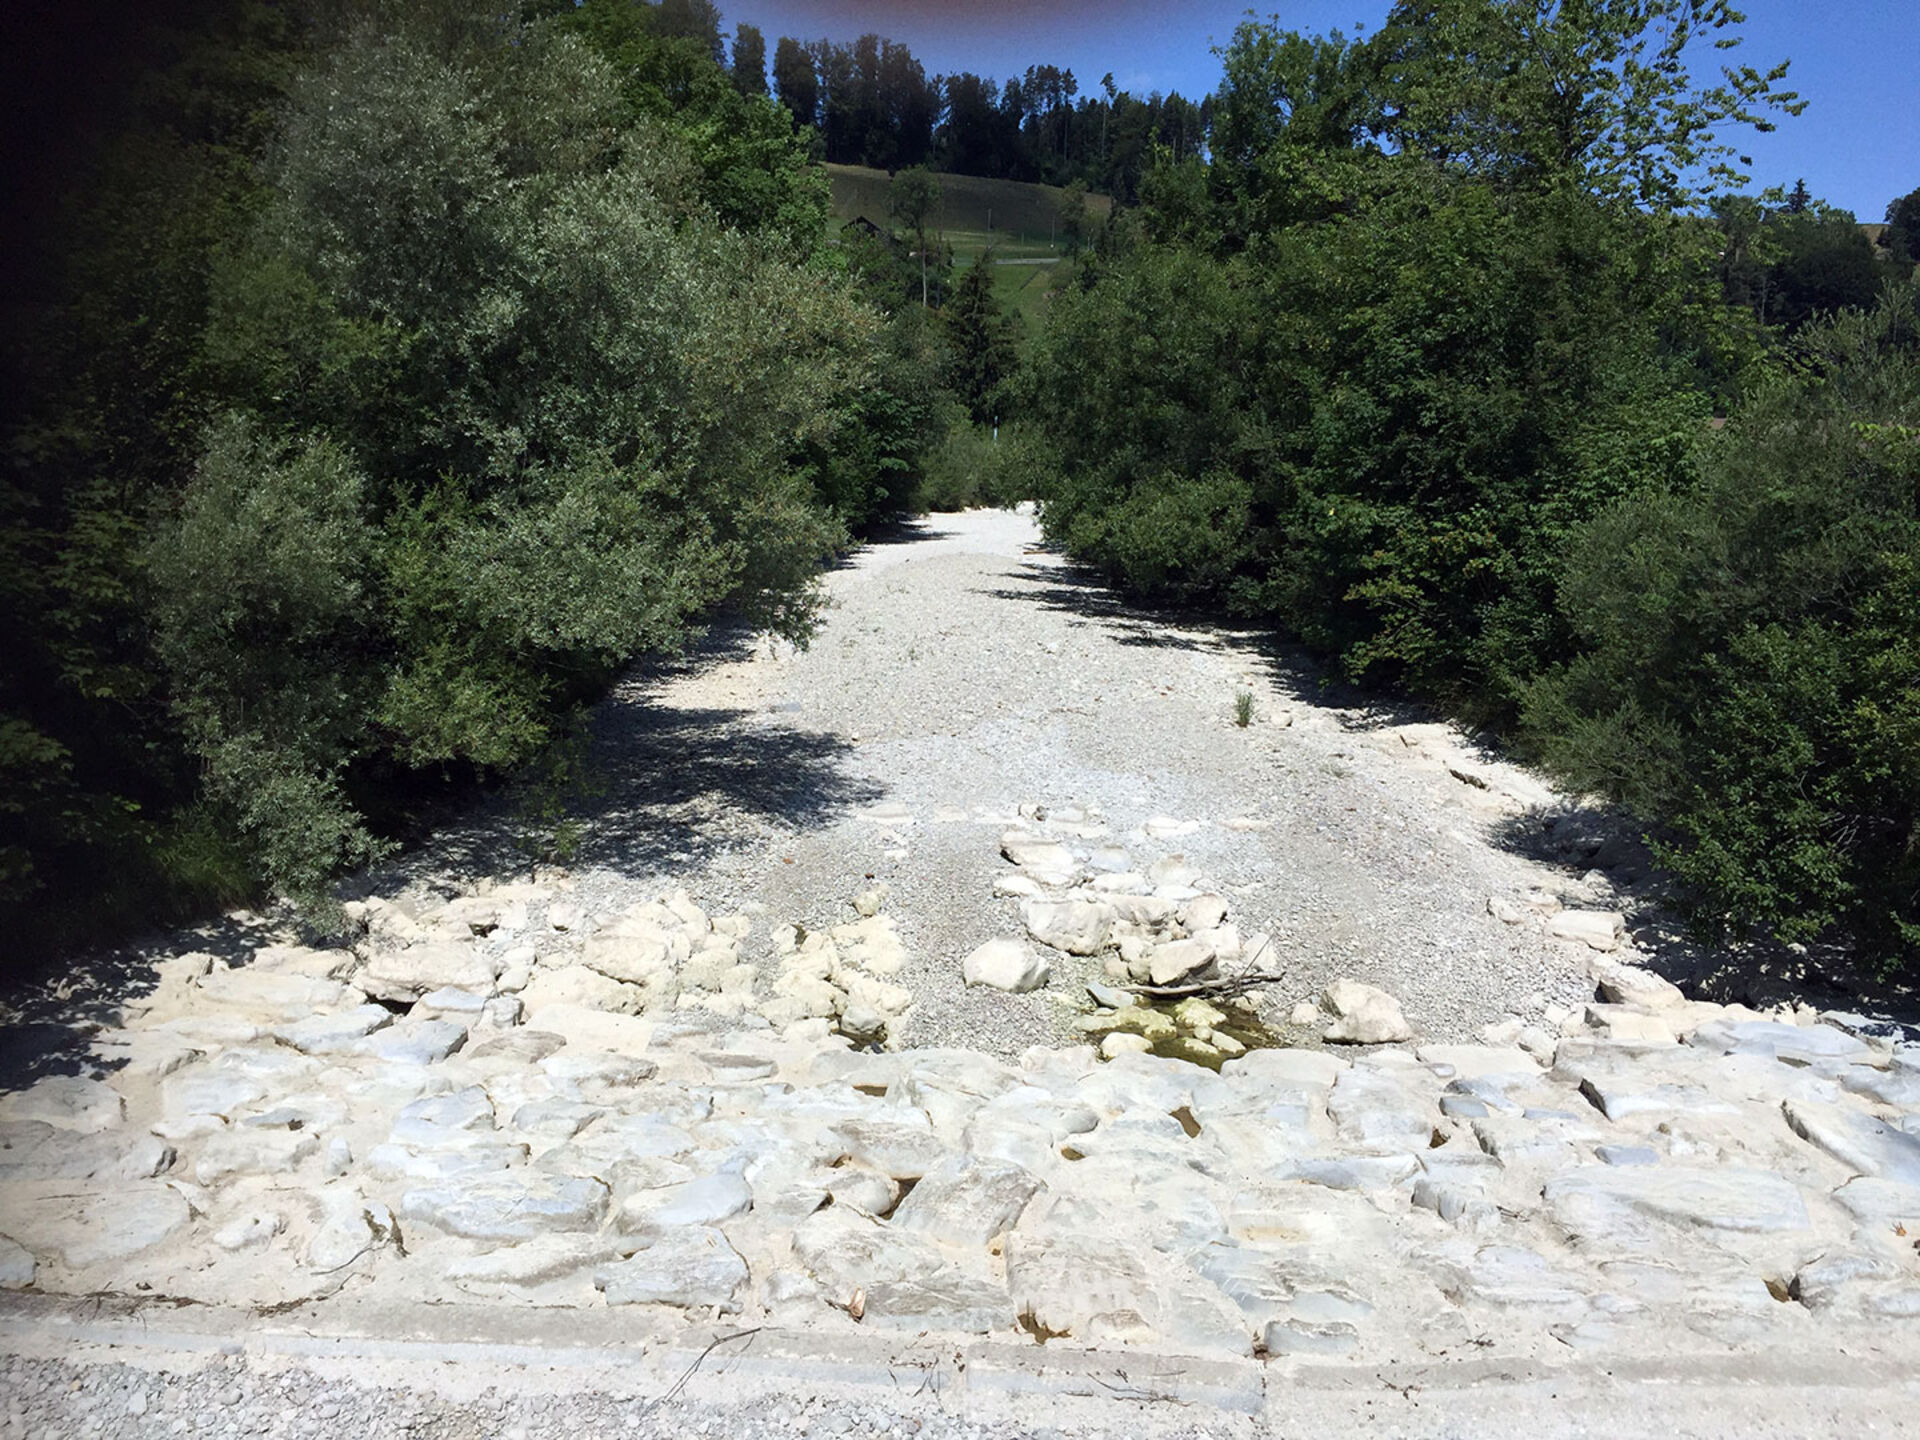  Einige Schweizer Flüsse sind über weite Abschnitte komplett trocken gefallen. So auch der Oberlauf der Töss (Bild vom 12. Juli 2018).  